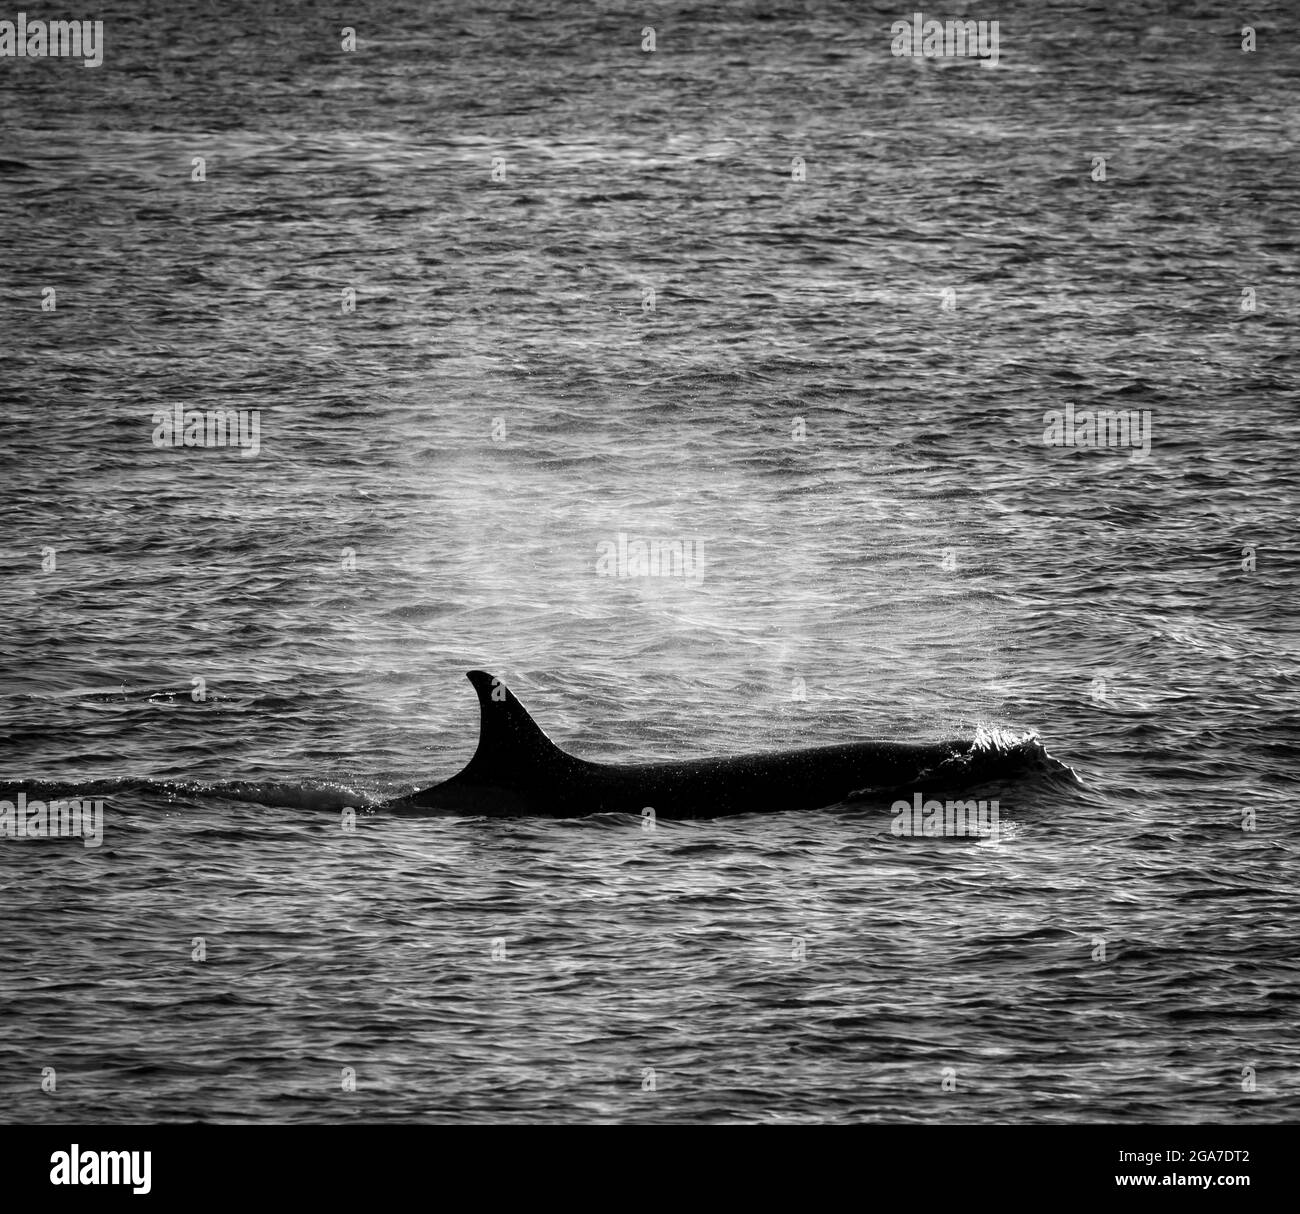 Leoni marini di caccia alle balene, Penisola Valdes, patrimonio dell'umanità dell'UNESCO, Patagonia, Argentina. Foto Stock